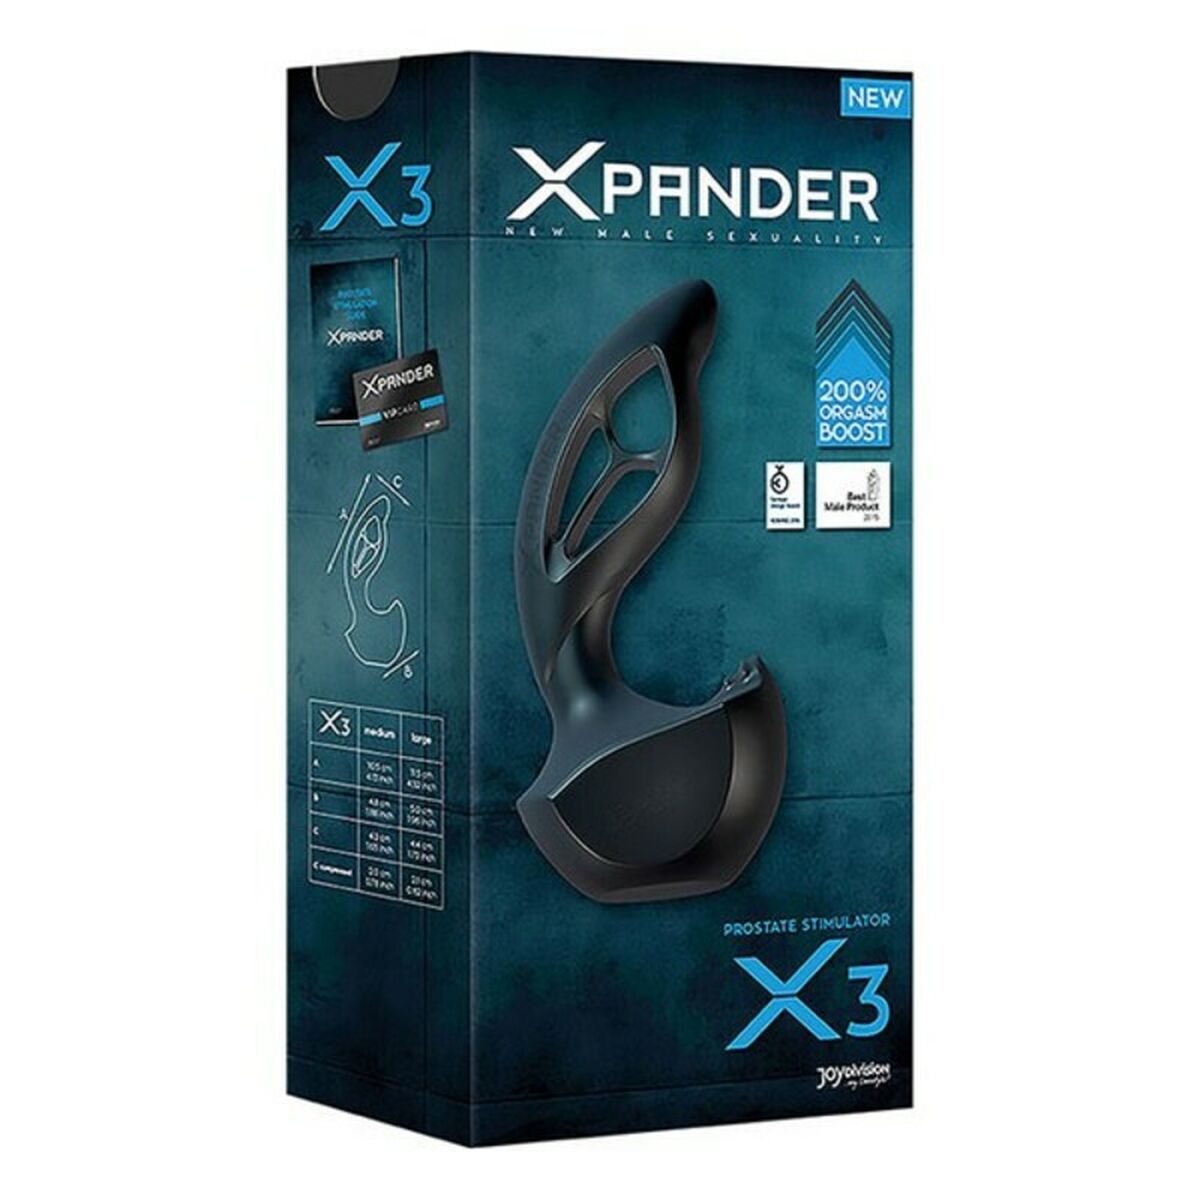 Kaufe Xpander X3 Silikon Noir Prostatastimulator Joydivision Xpander X3 Schwarz bei AWK Flagship um € 48.00